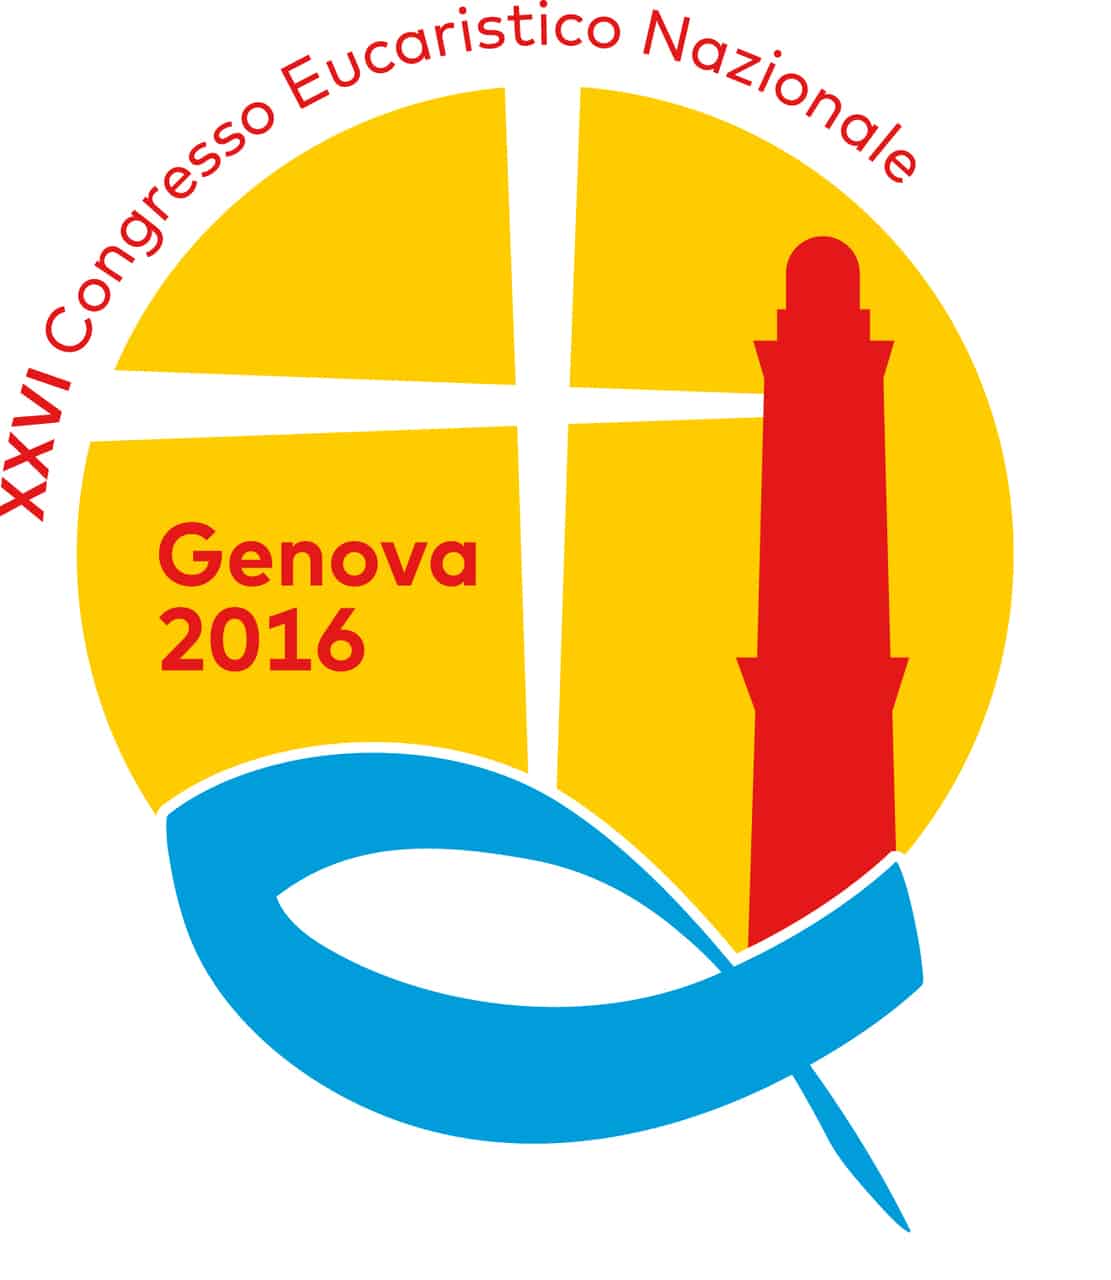 XXVI Congresso Eucaristico Nazionale a Genova: il coinvolgimento di Caritas e Auxilium